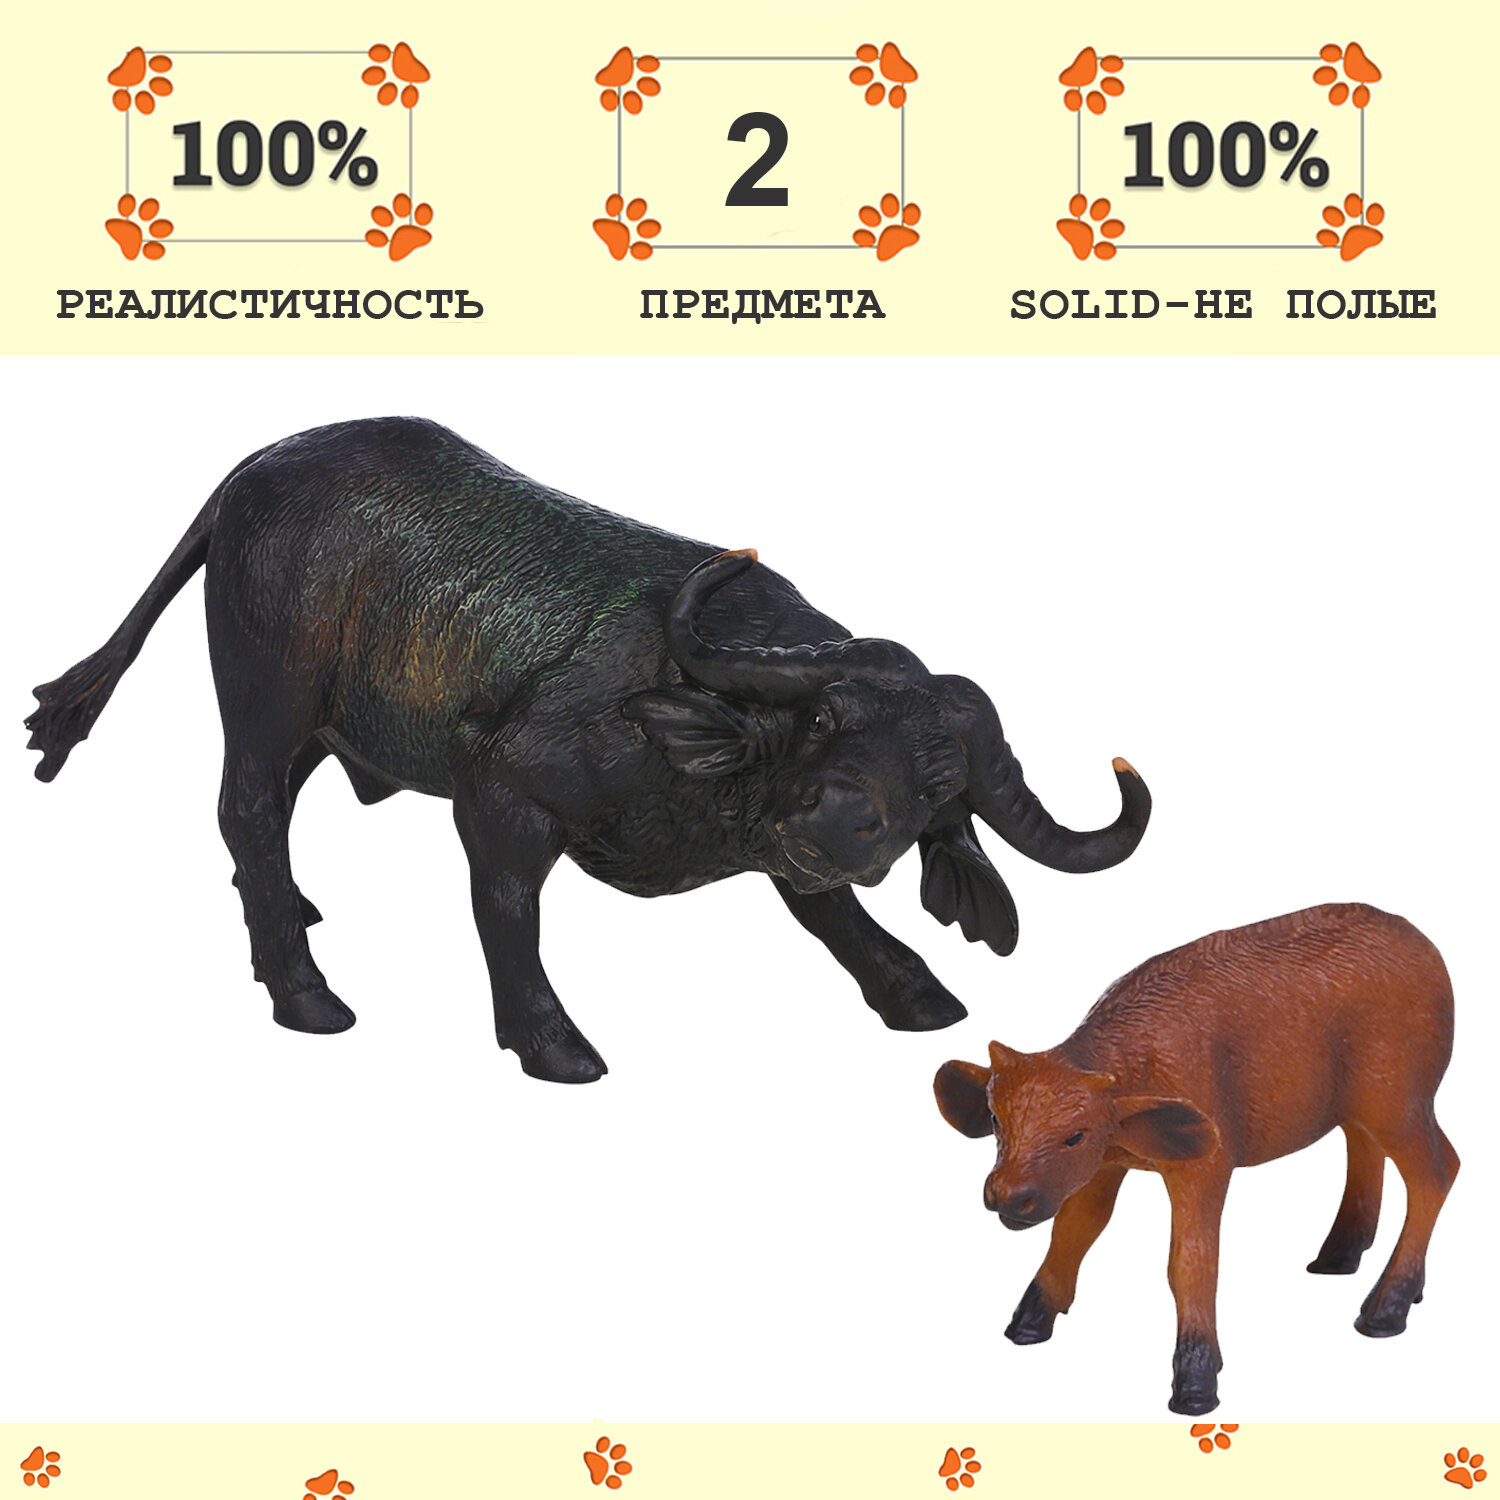 Набор фигурок животных серии "Мир диких животных": Семья буйволов, 2 предмета (буйвол и буйволёнок)